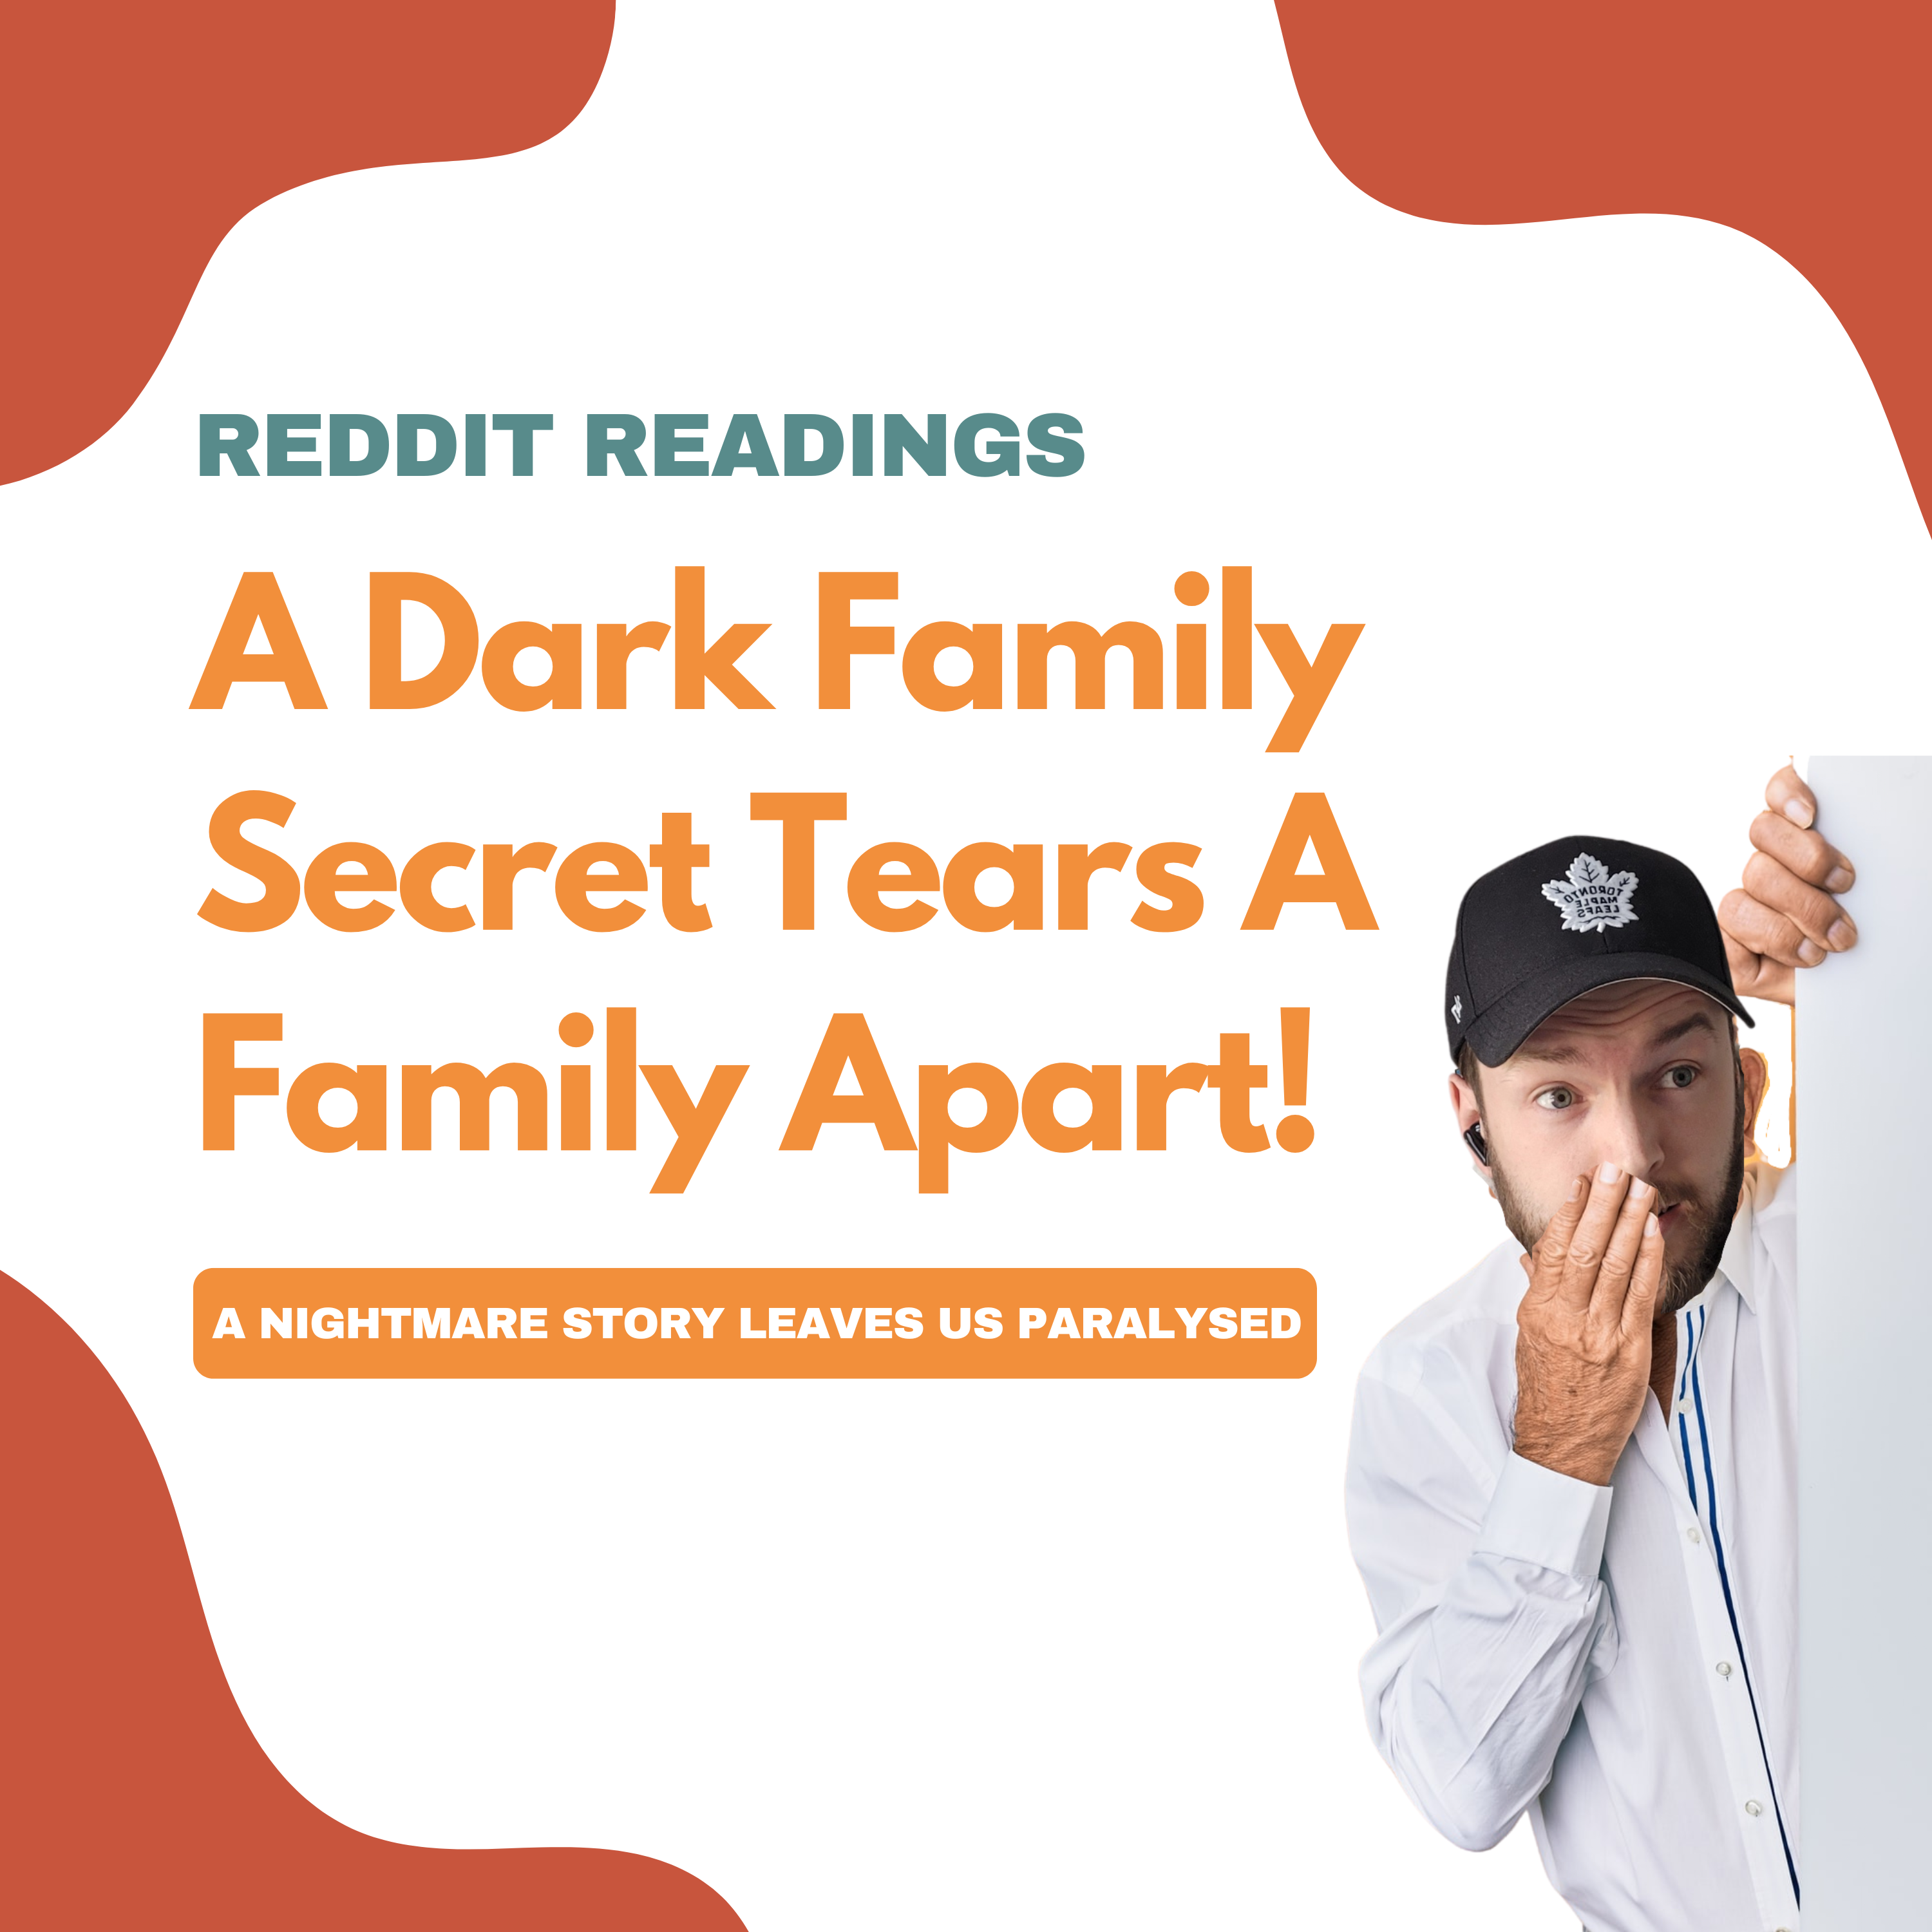 Reddit Readings | A Dark Family Secret Tears A Family Apart! Image